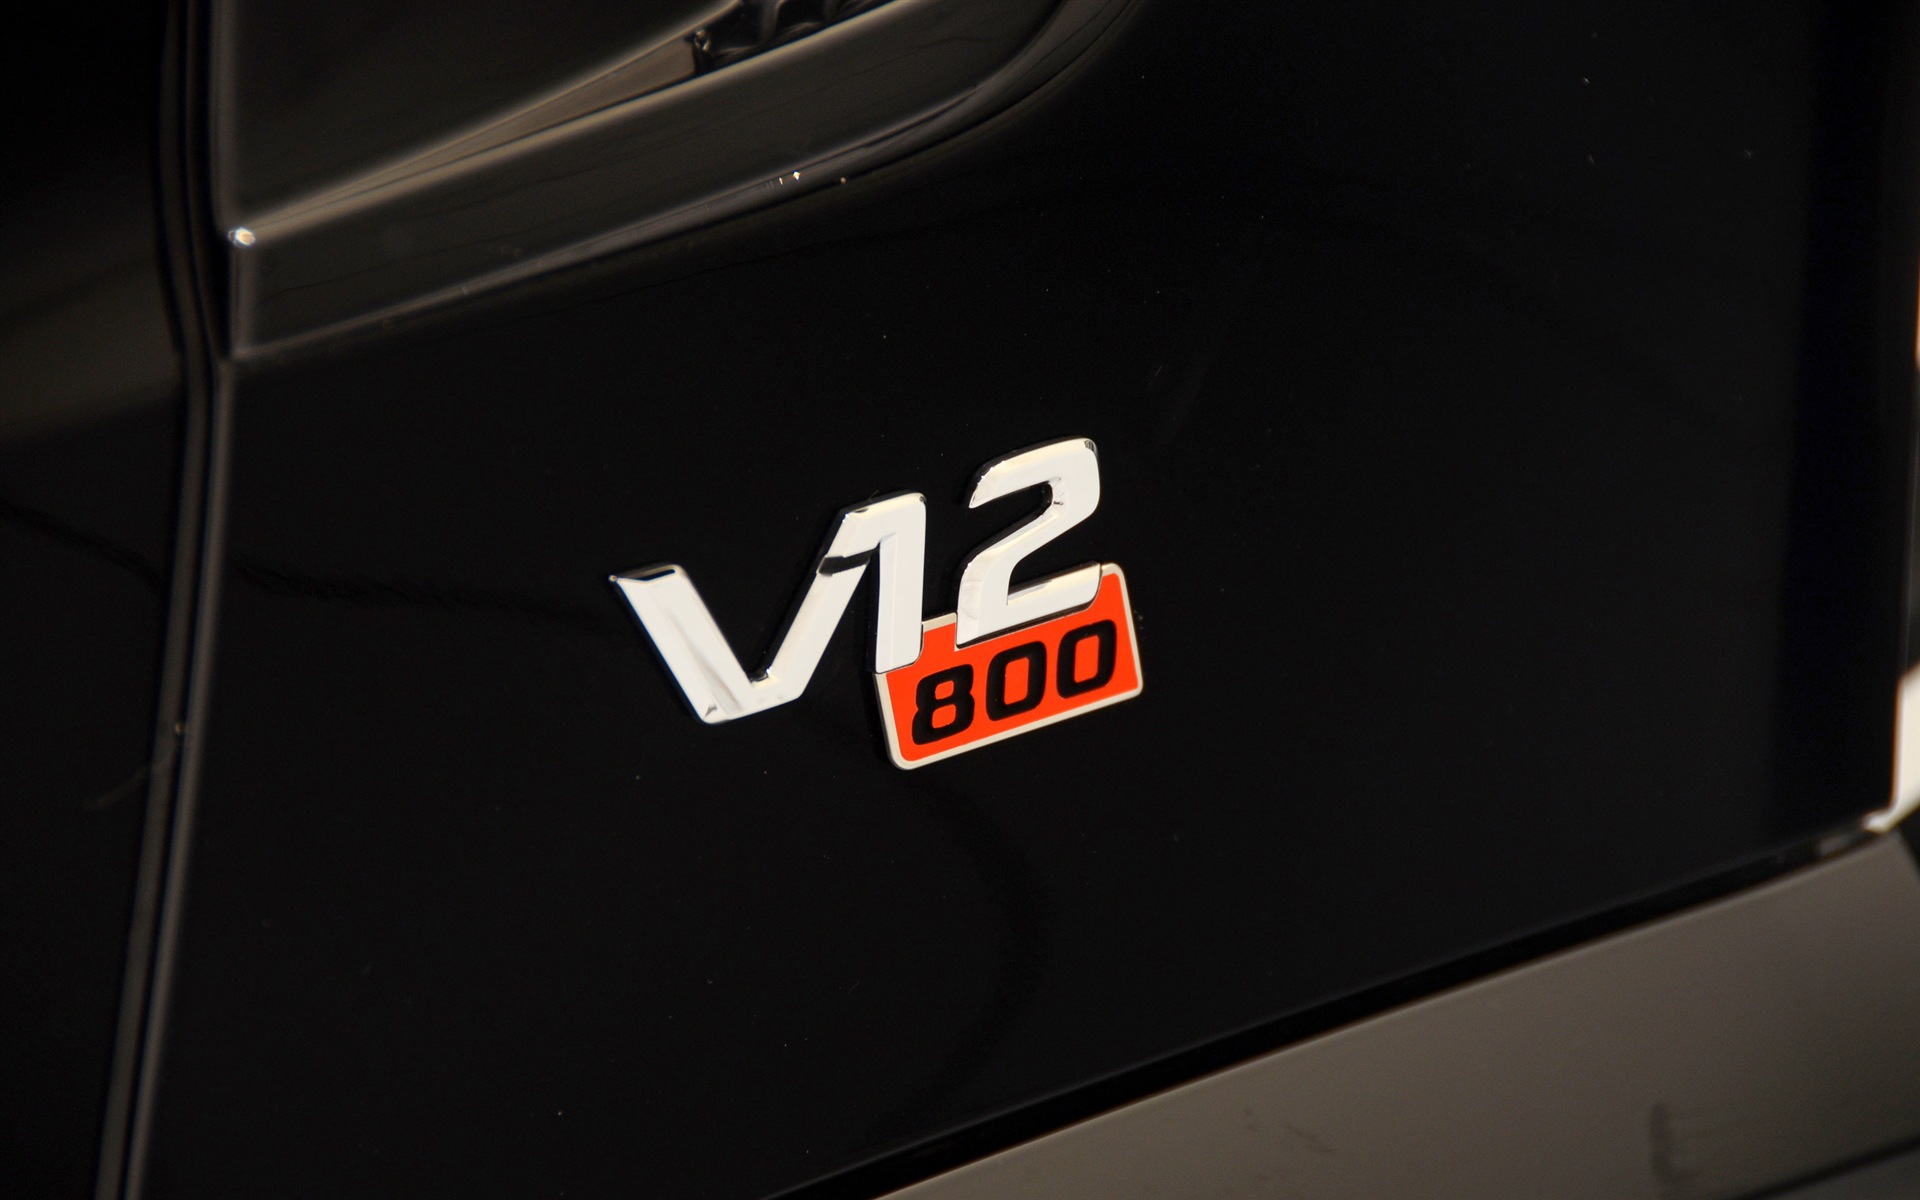 2013 Brabus 800 Roadster 博速 跑车高清壁纸17 - 1920x1200